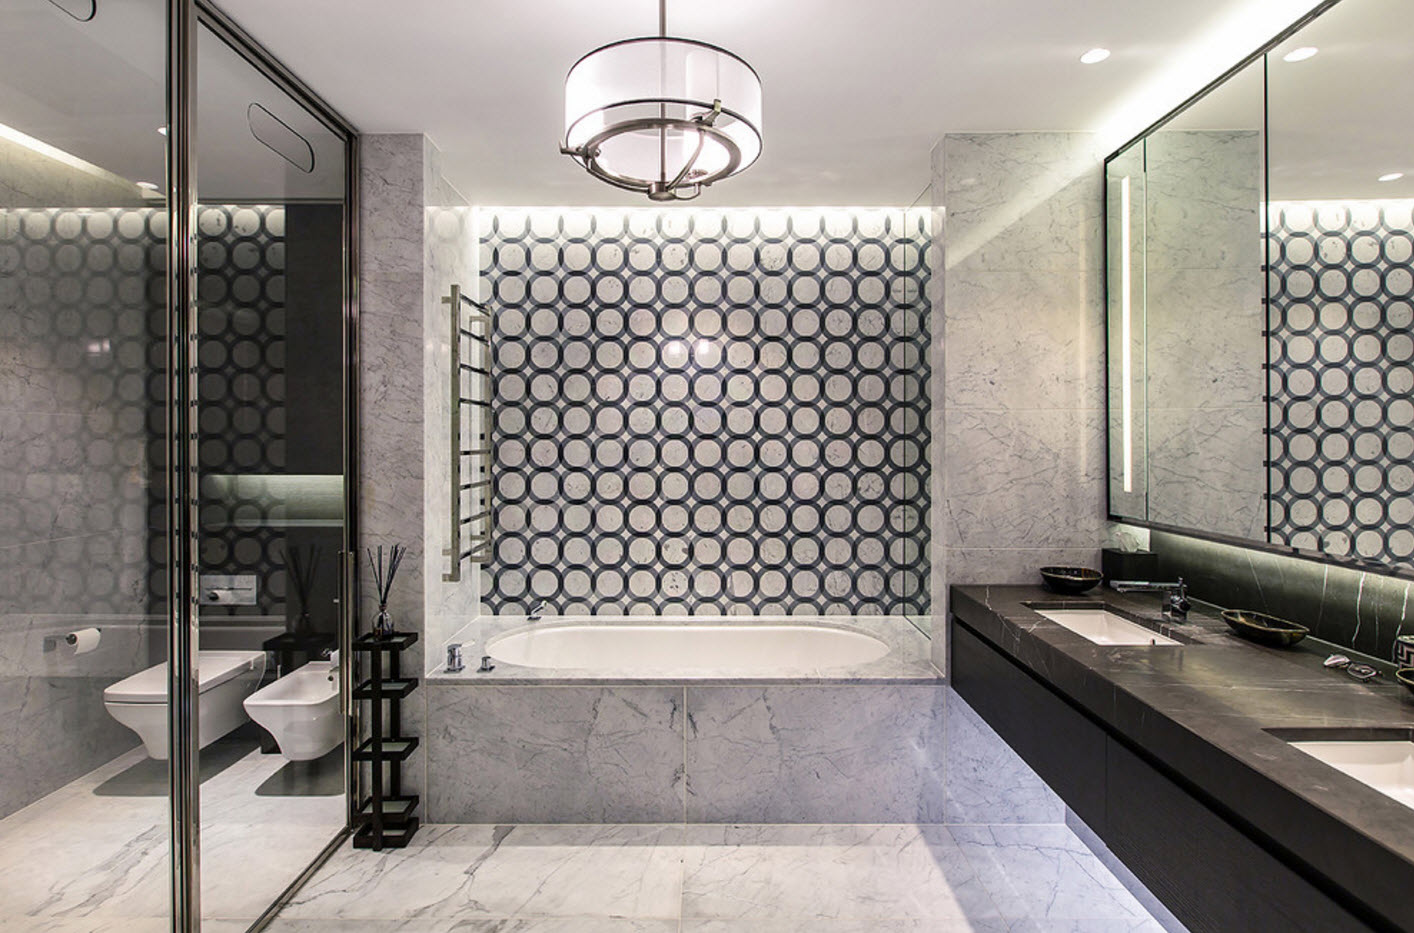 thiết kế phòng tắm với các mẫu hình học nhà vệ sinh